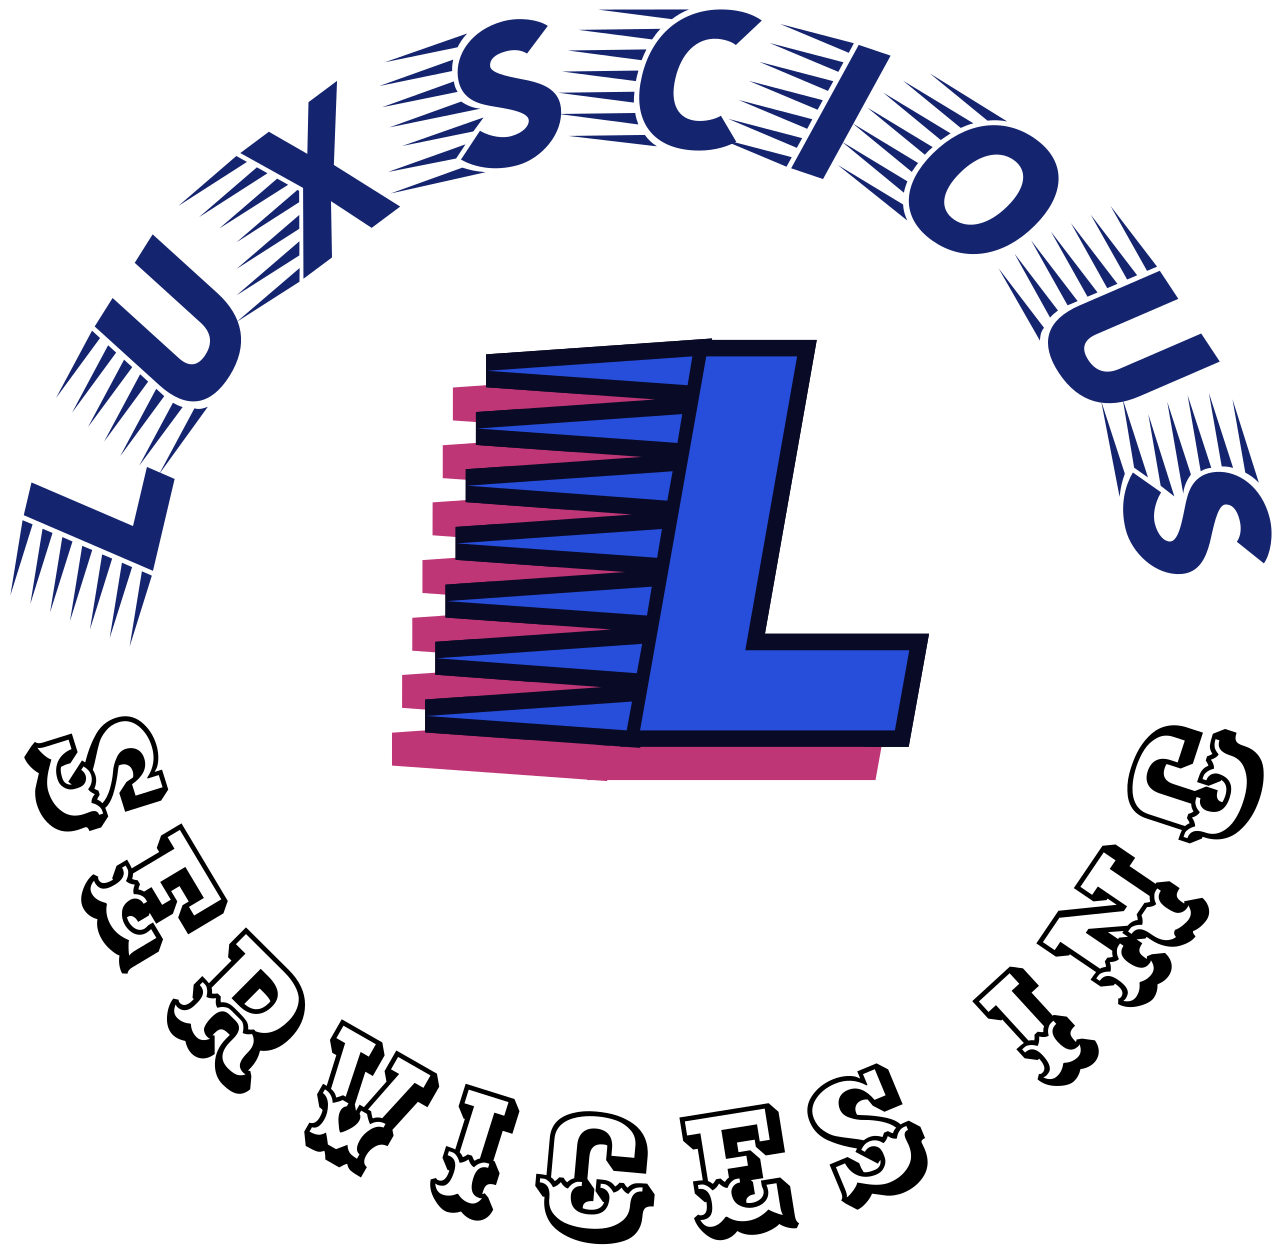 LUXSCIOUS's web page